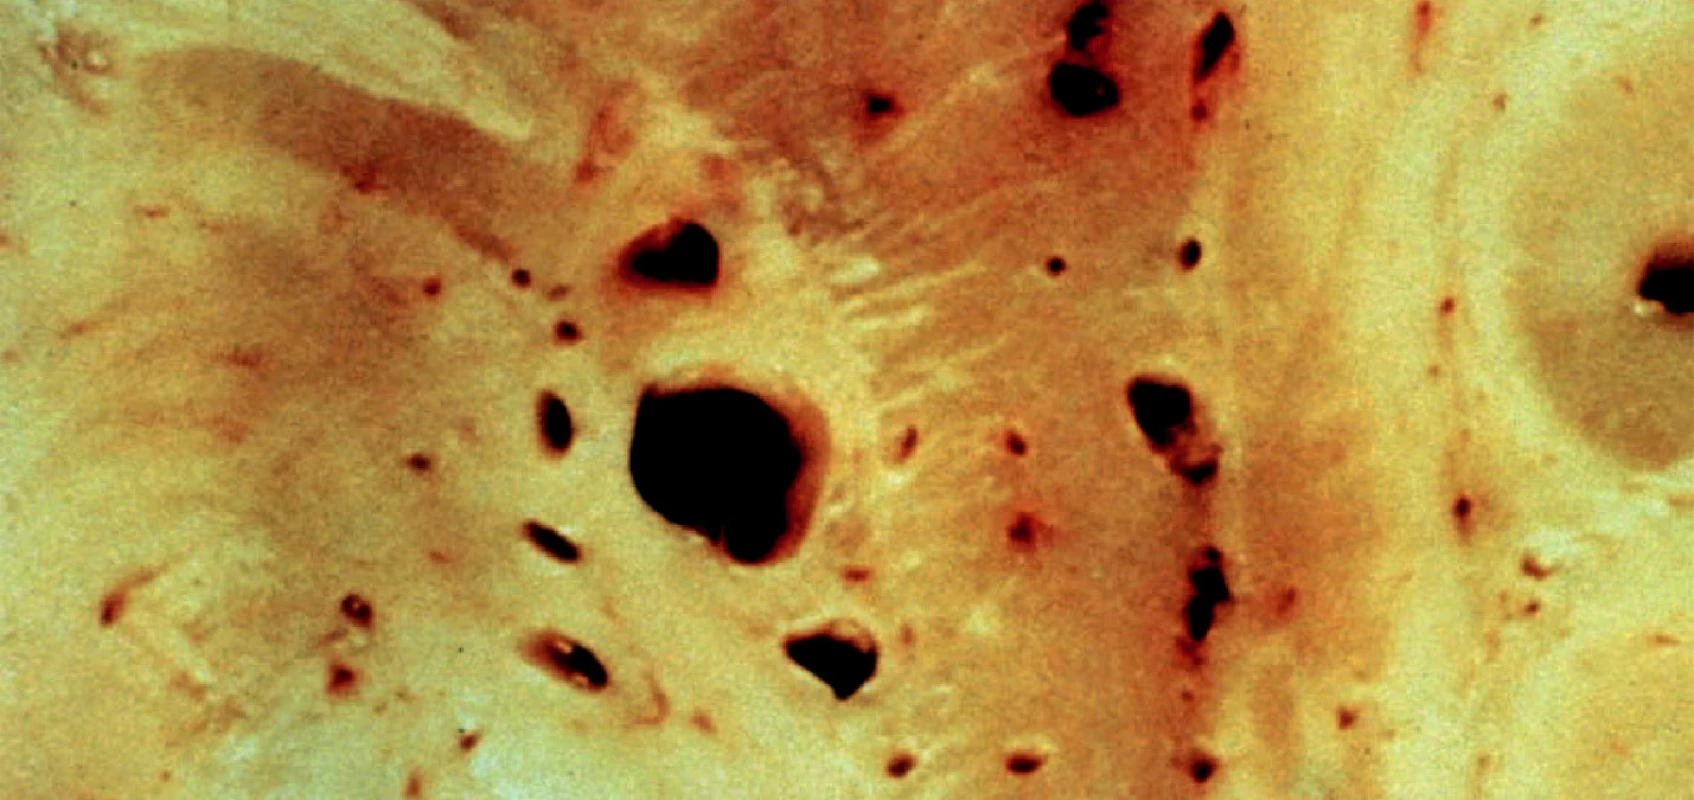 Lakuny (větší dutinky) a cribra (menší dutinky) bazálních ganglií. Lakuna je postmalatická
pseudocysta do průměru 10 mm. Cribrum je dutinka vytvořená mechanicky pulzem tepének.